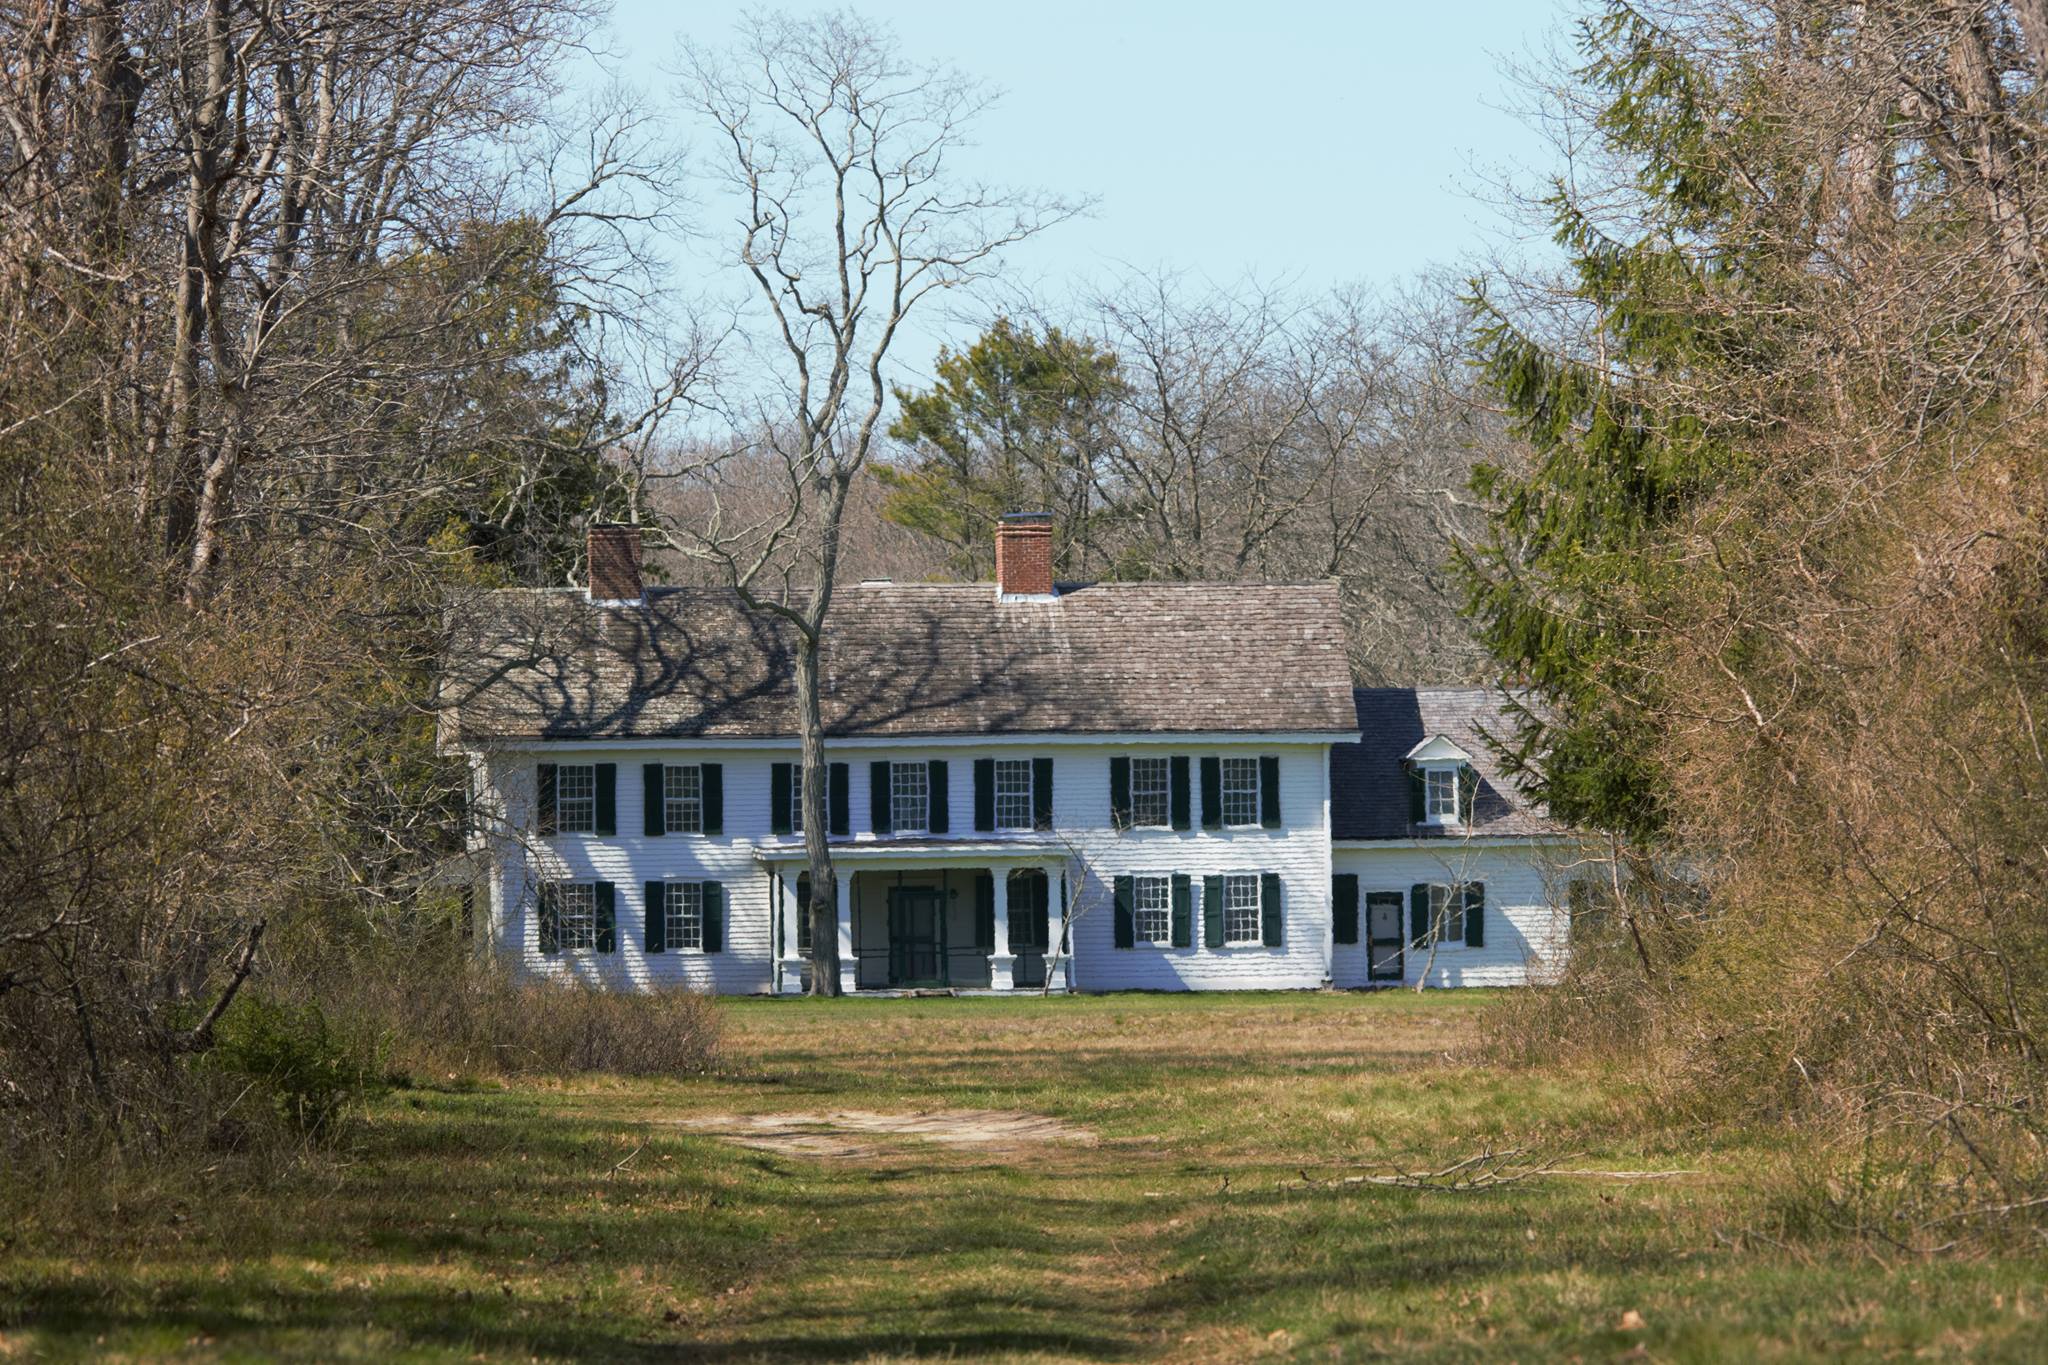 William Floyd Estate